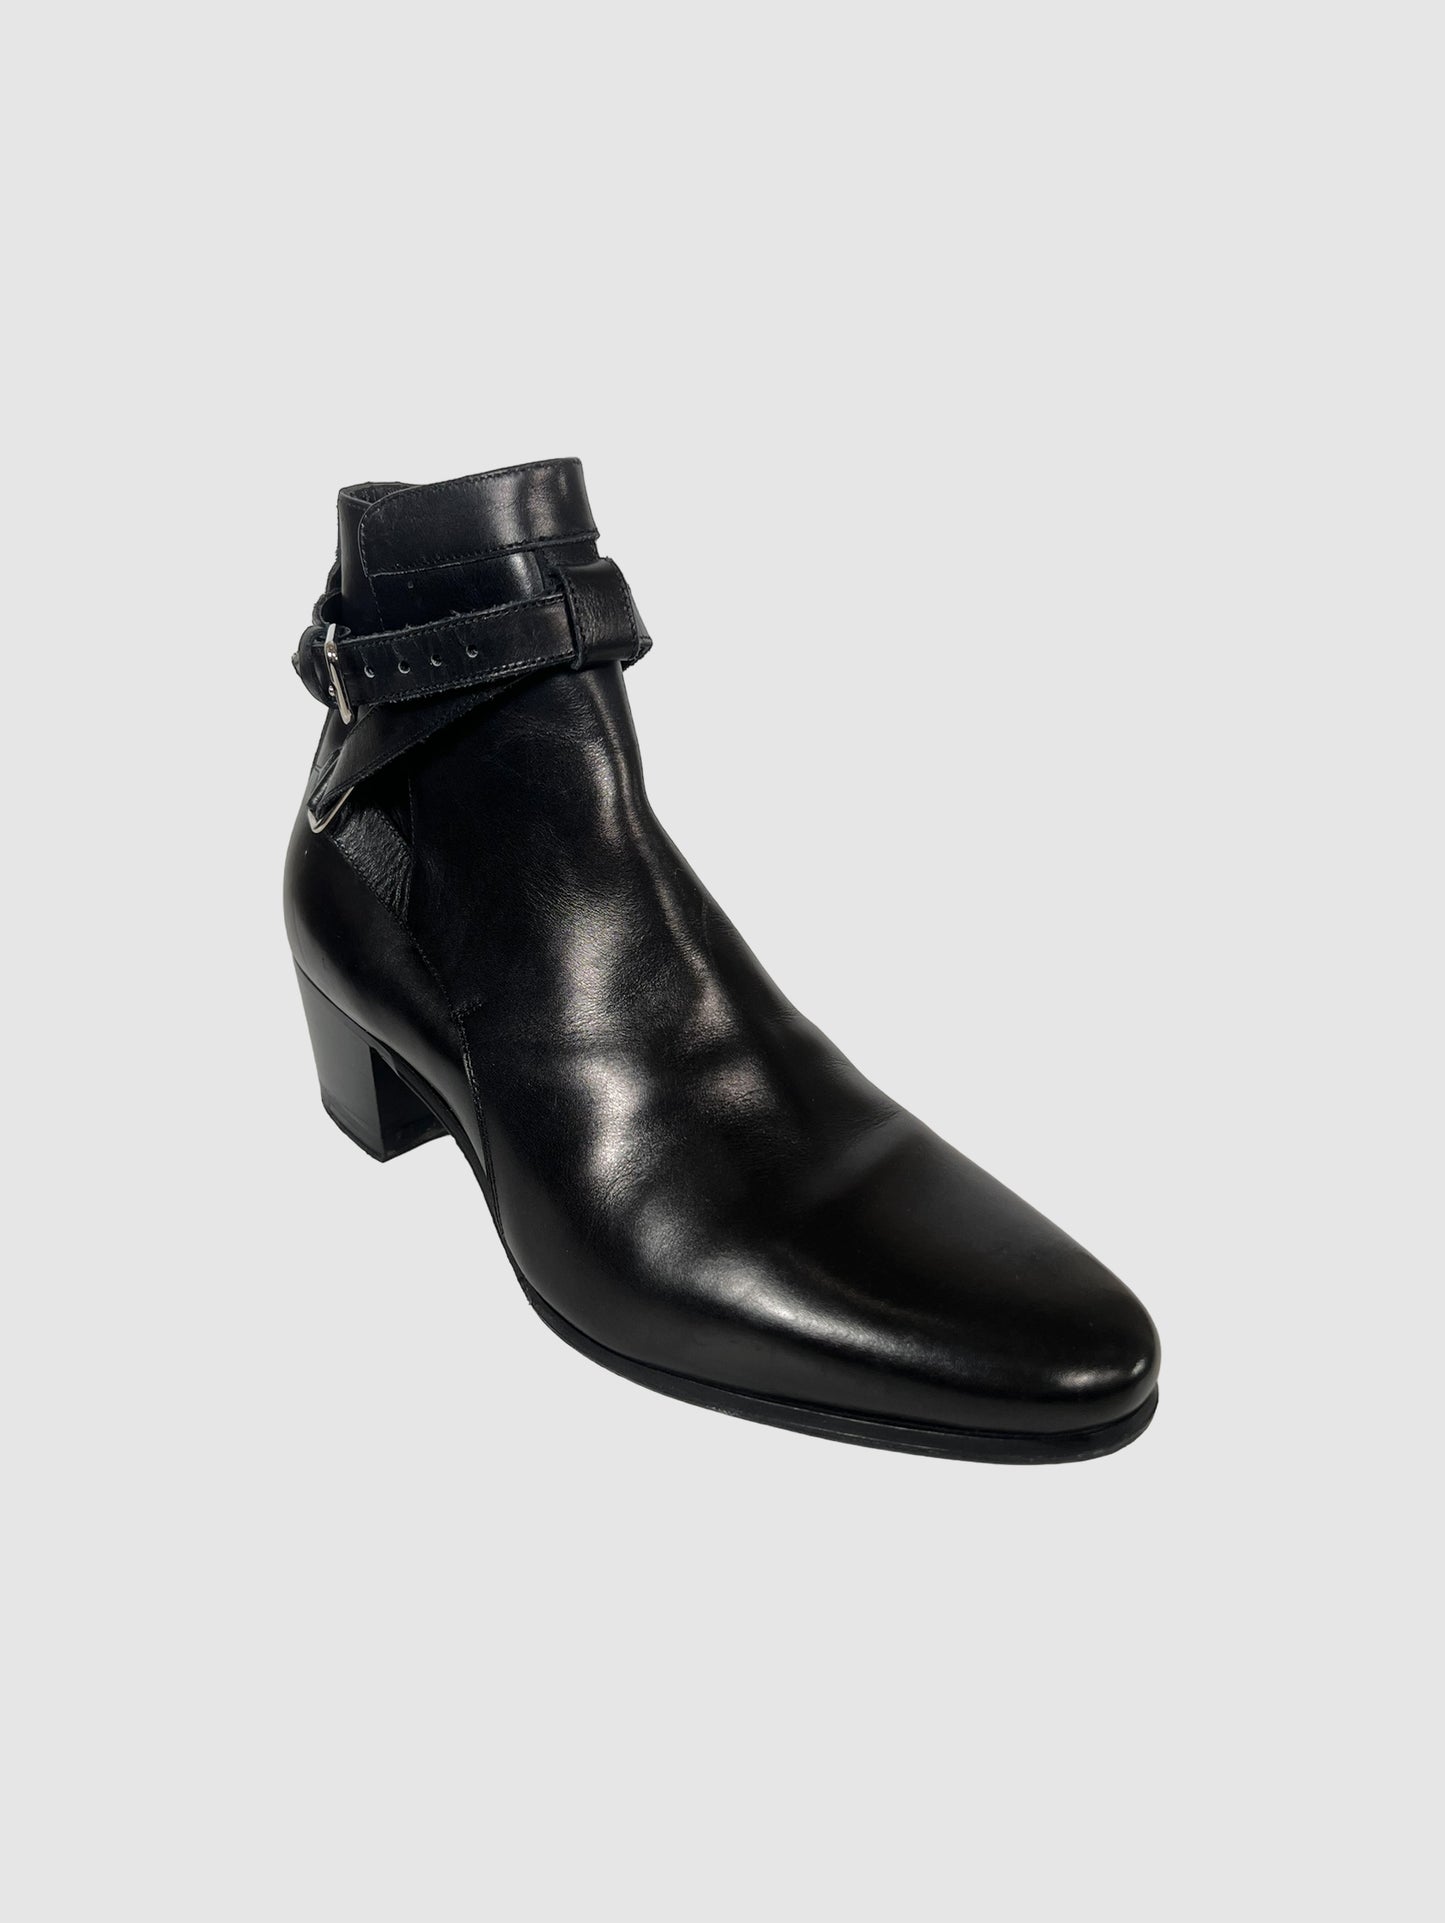 Saint Laurent Johdpur Ankle Boots - Size 36.5